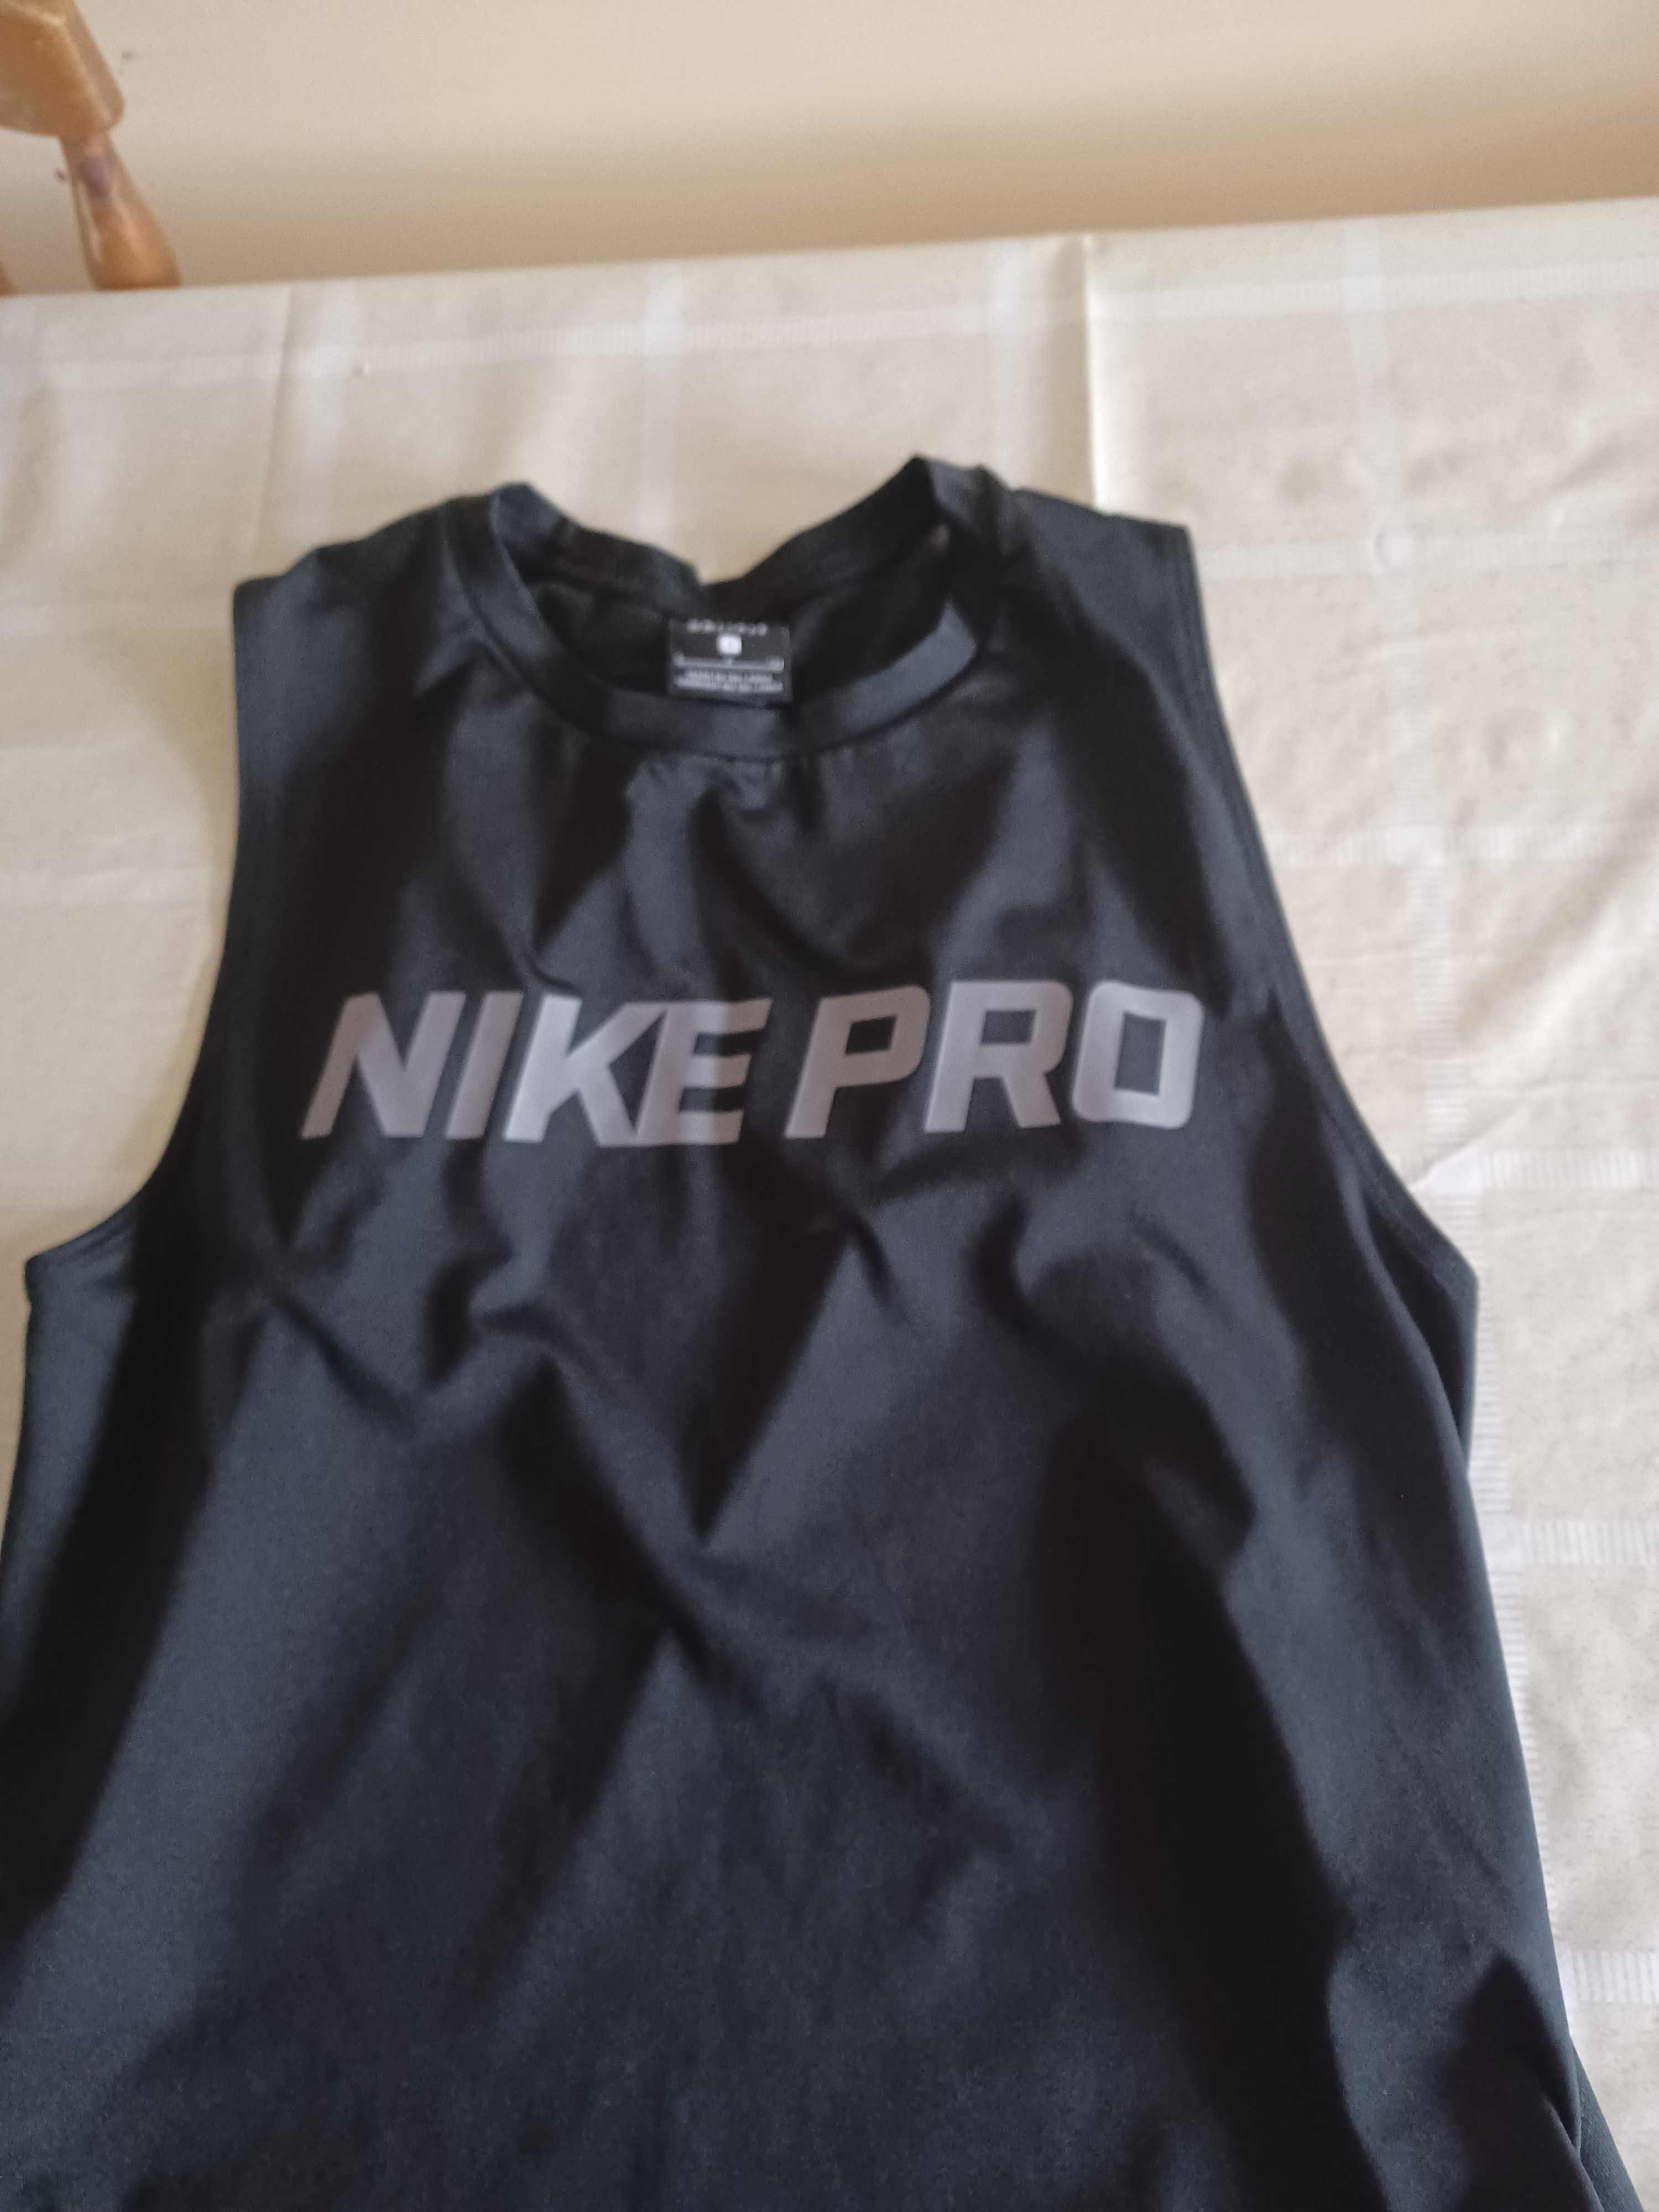 Nike pro sportowa termo koszulka damska. Rozmiar S